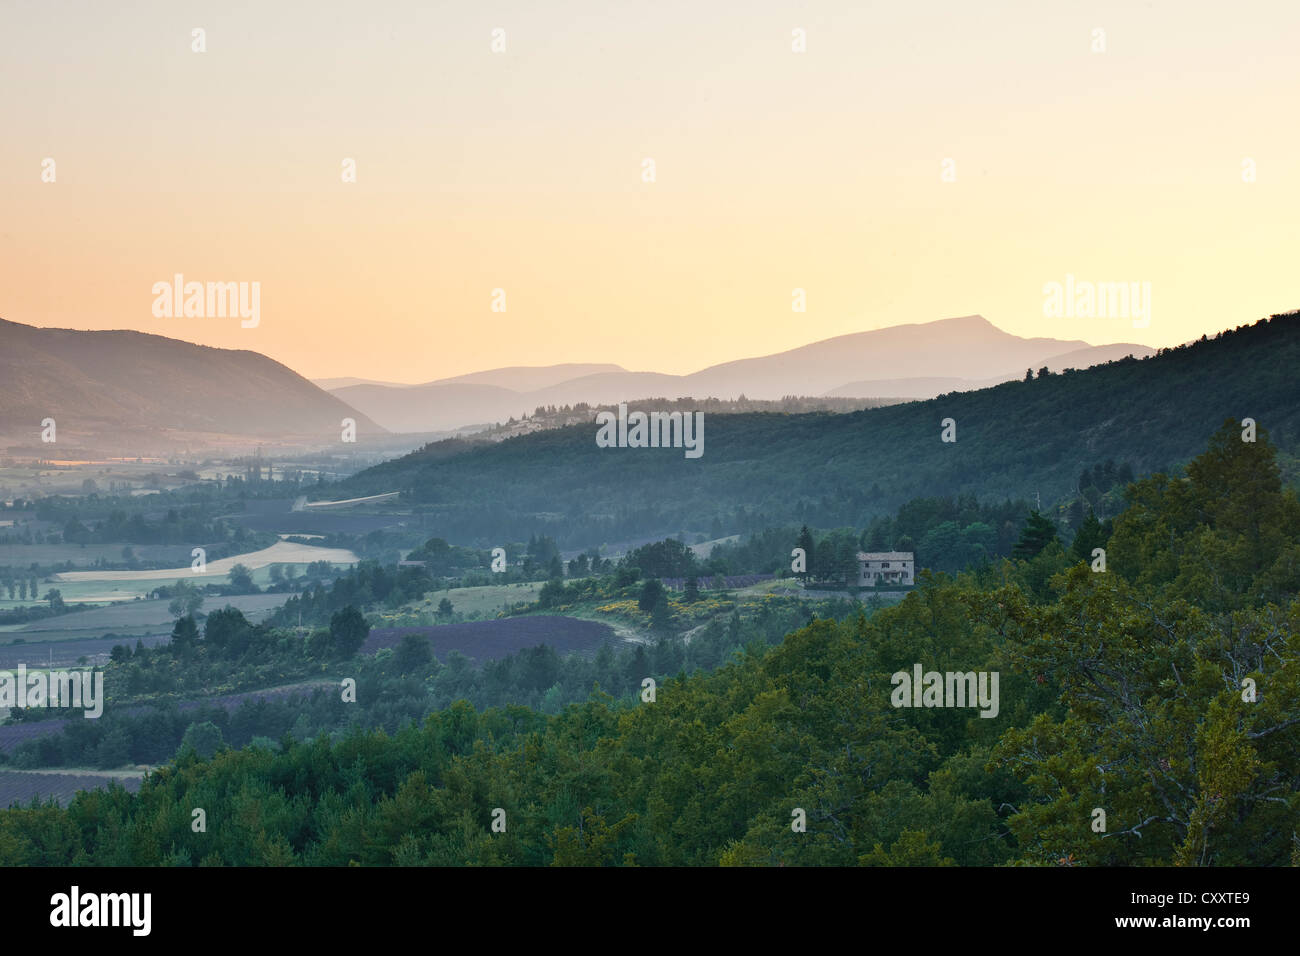 Champs de lavande près de Sault en Provence, à l'aube. Banque D'Images